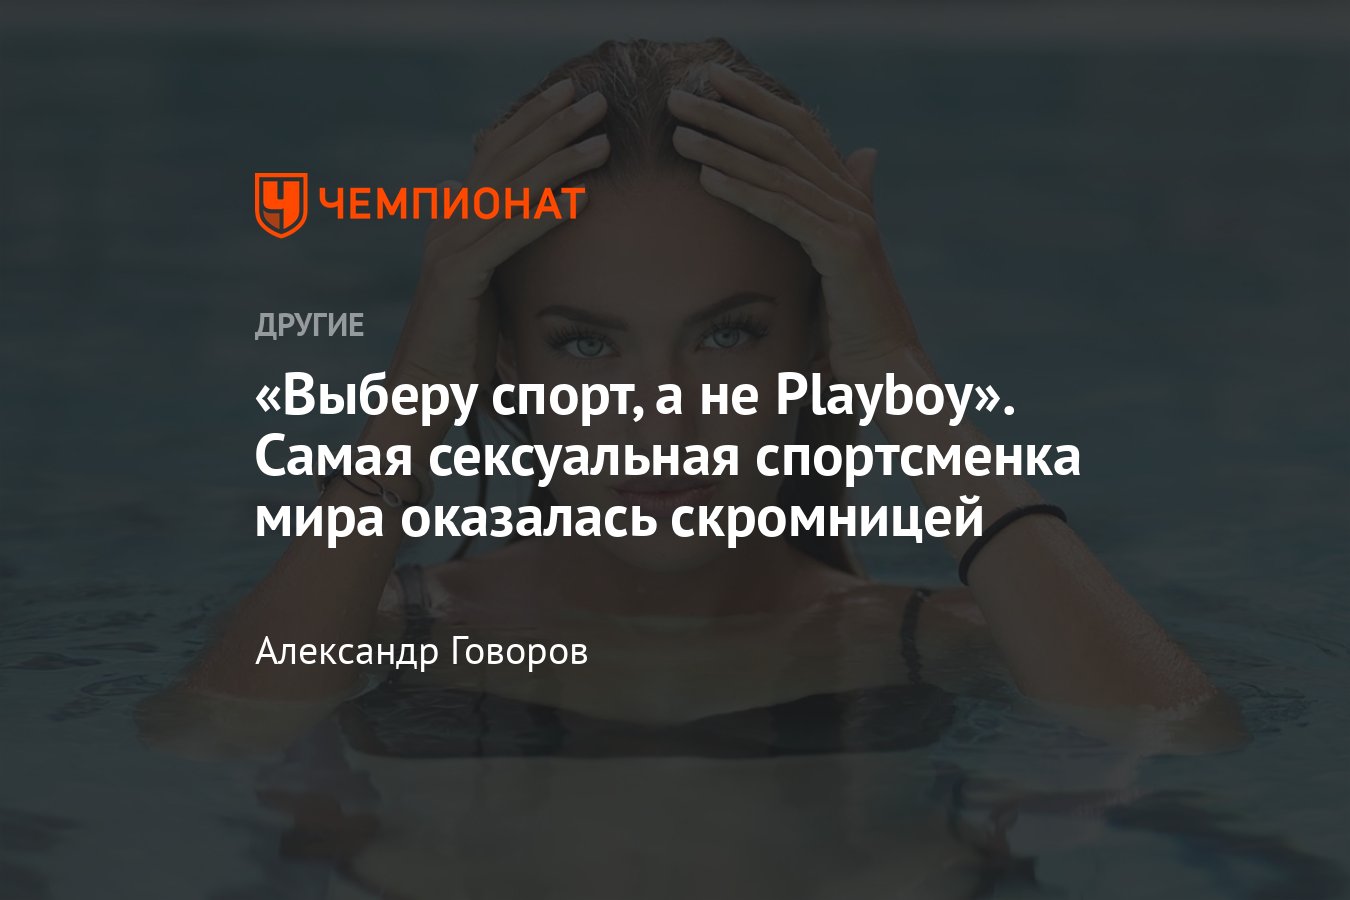 Самая сексуальная спортсменка мира Алиса Шмидт отказала журналу Playboy –  фото - Чемпионат